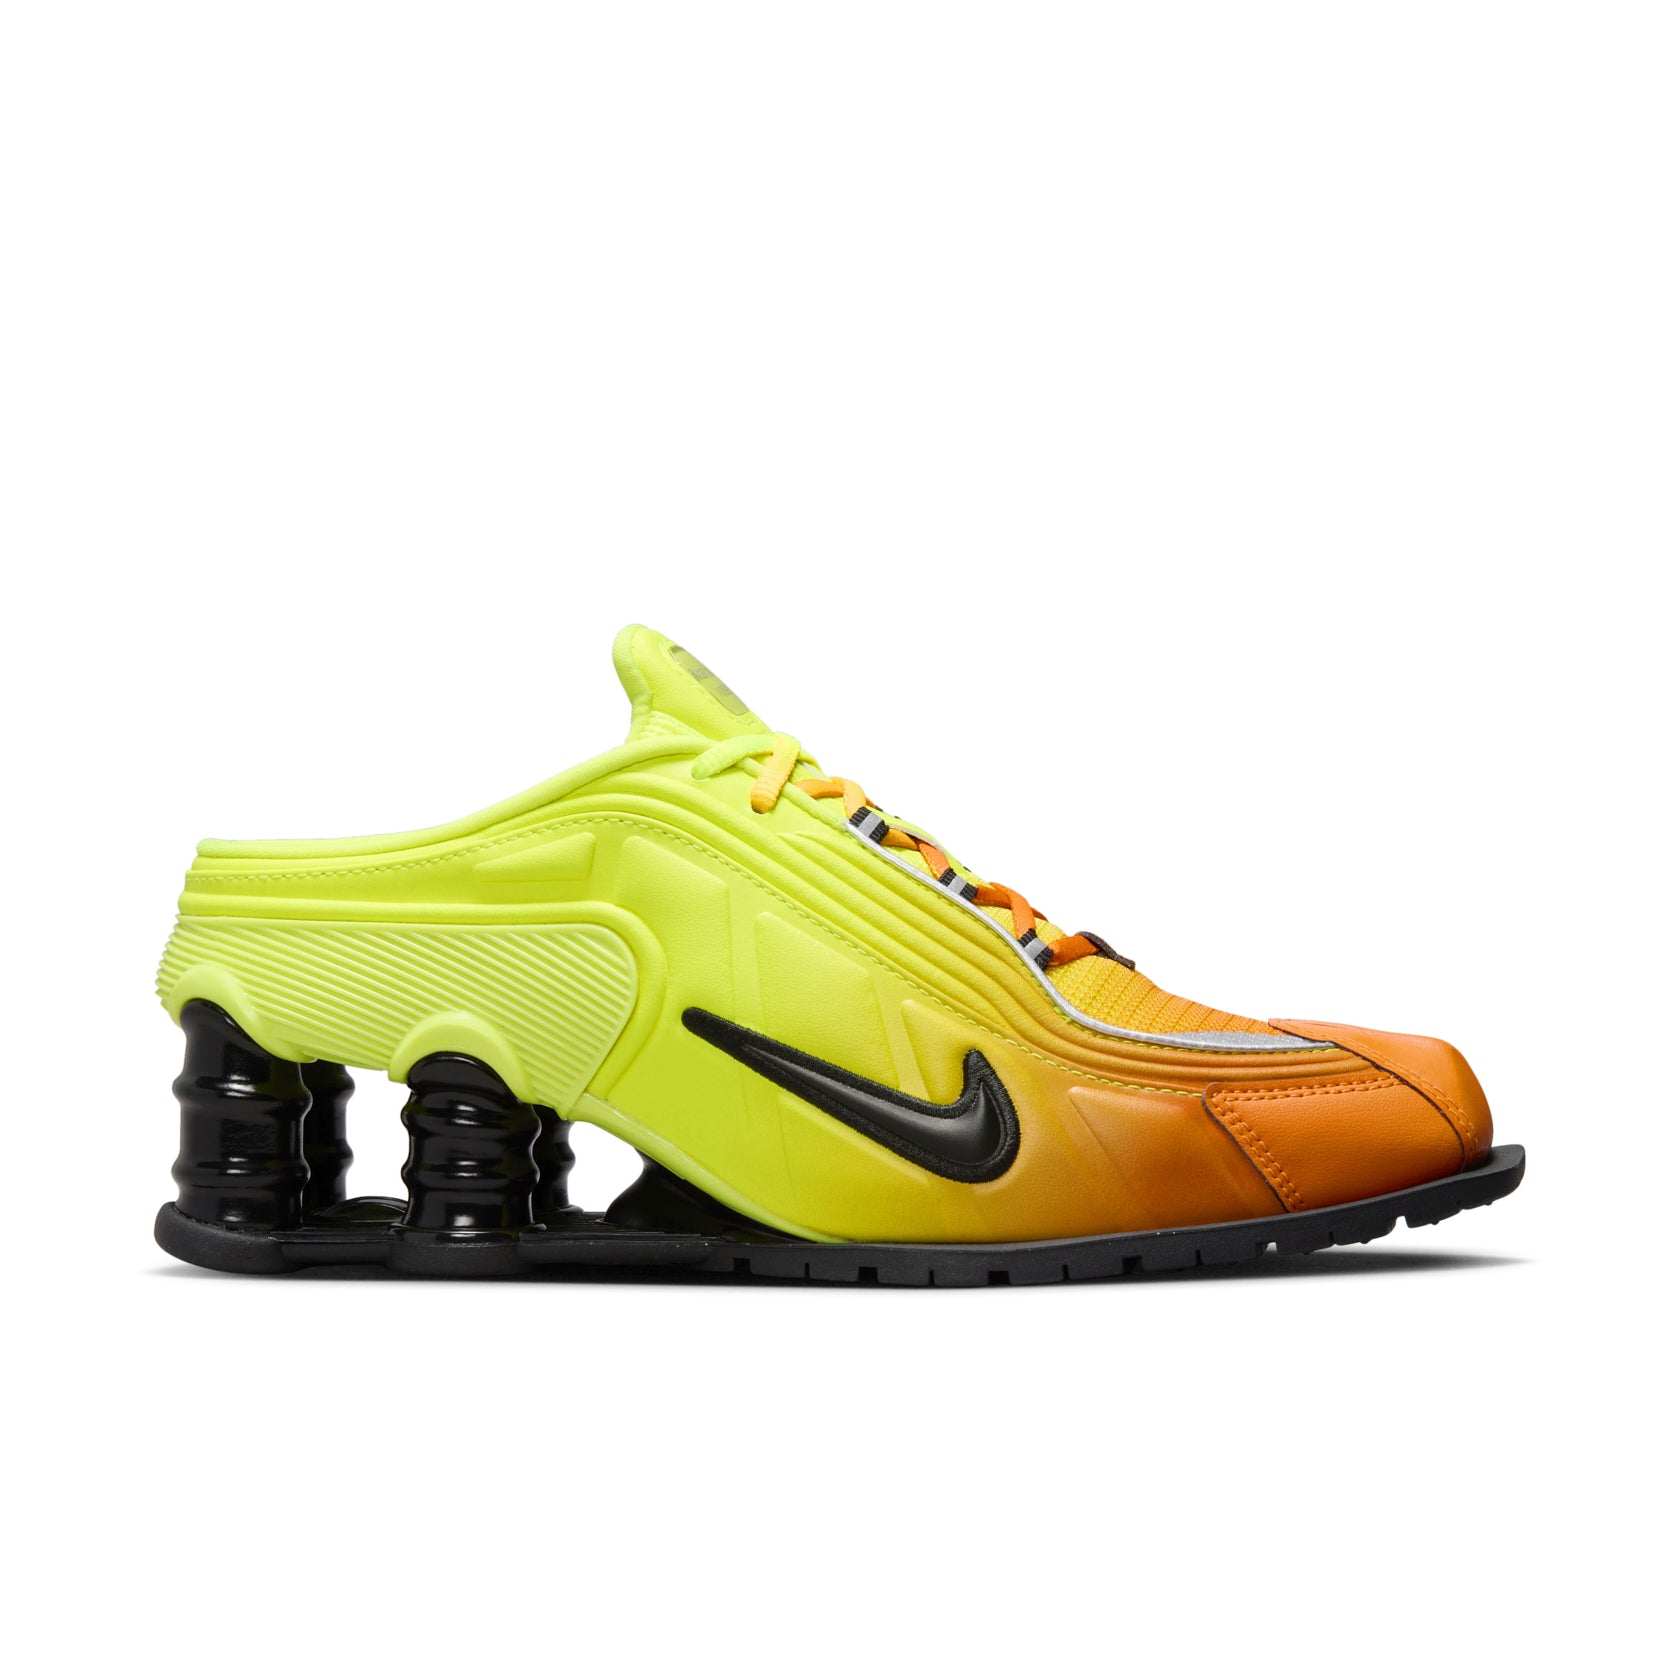 Nike Shox MR4 in Orange